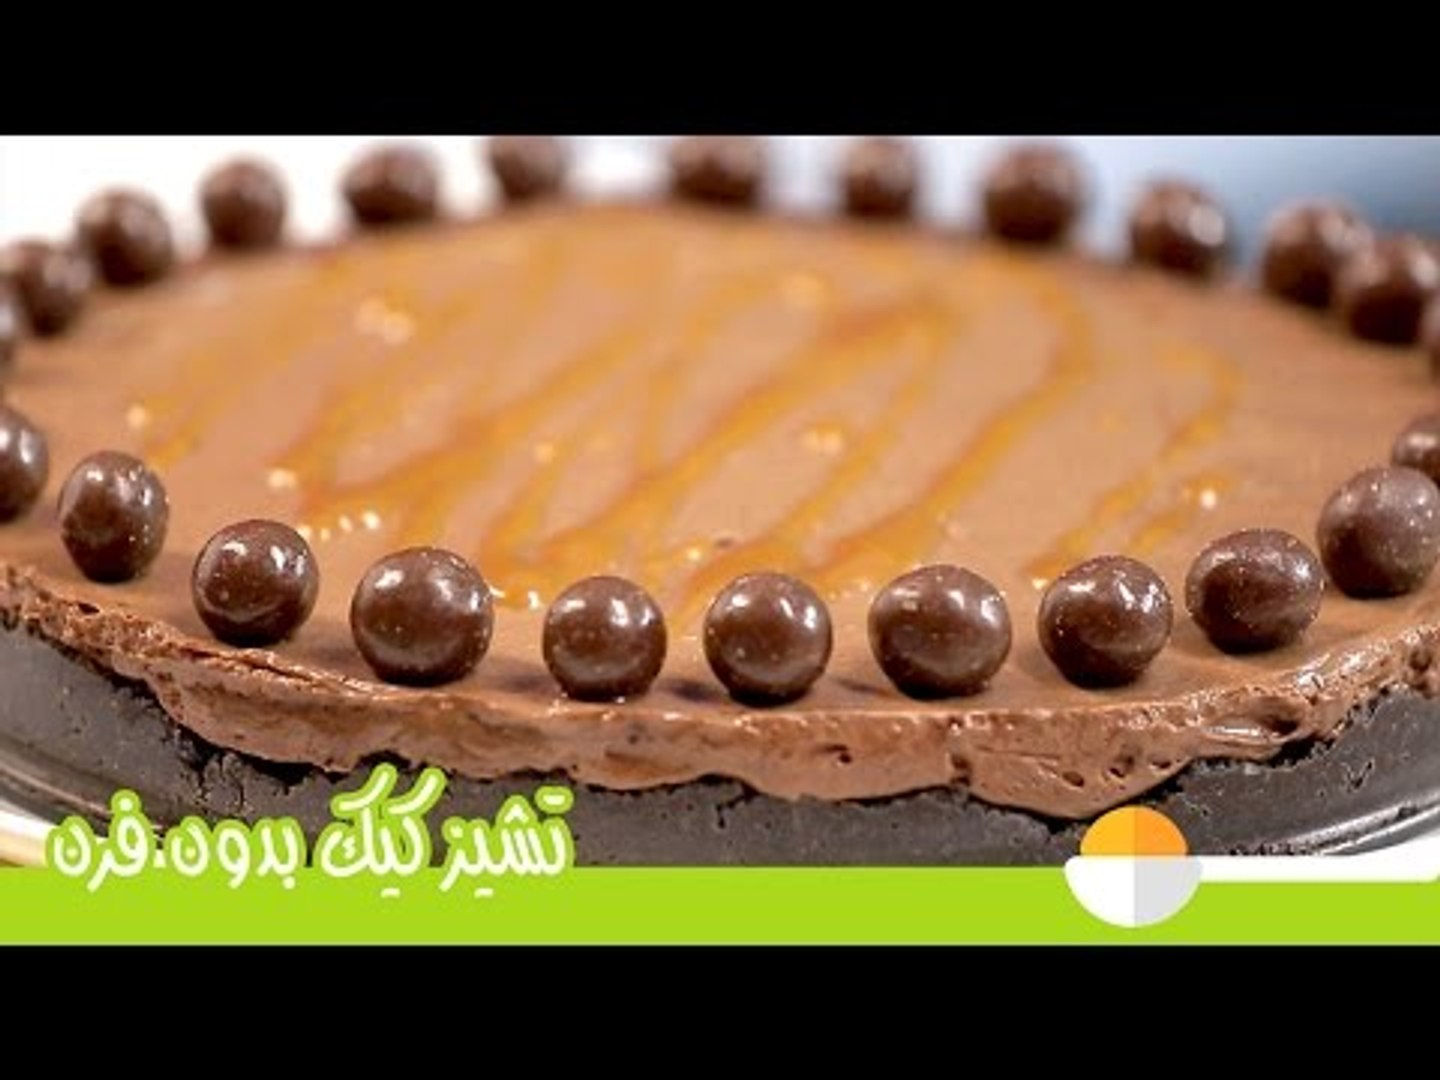 طريقة عمل تشيز كيك على البارد | تشيز كيك الشيكولاتة بدون فرن | No-Bake  Chocolate Cheesecake Recipe - فيديو Dailymotion